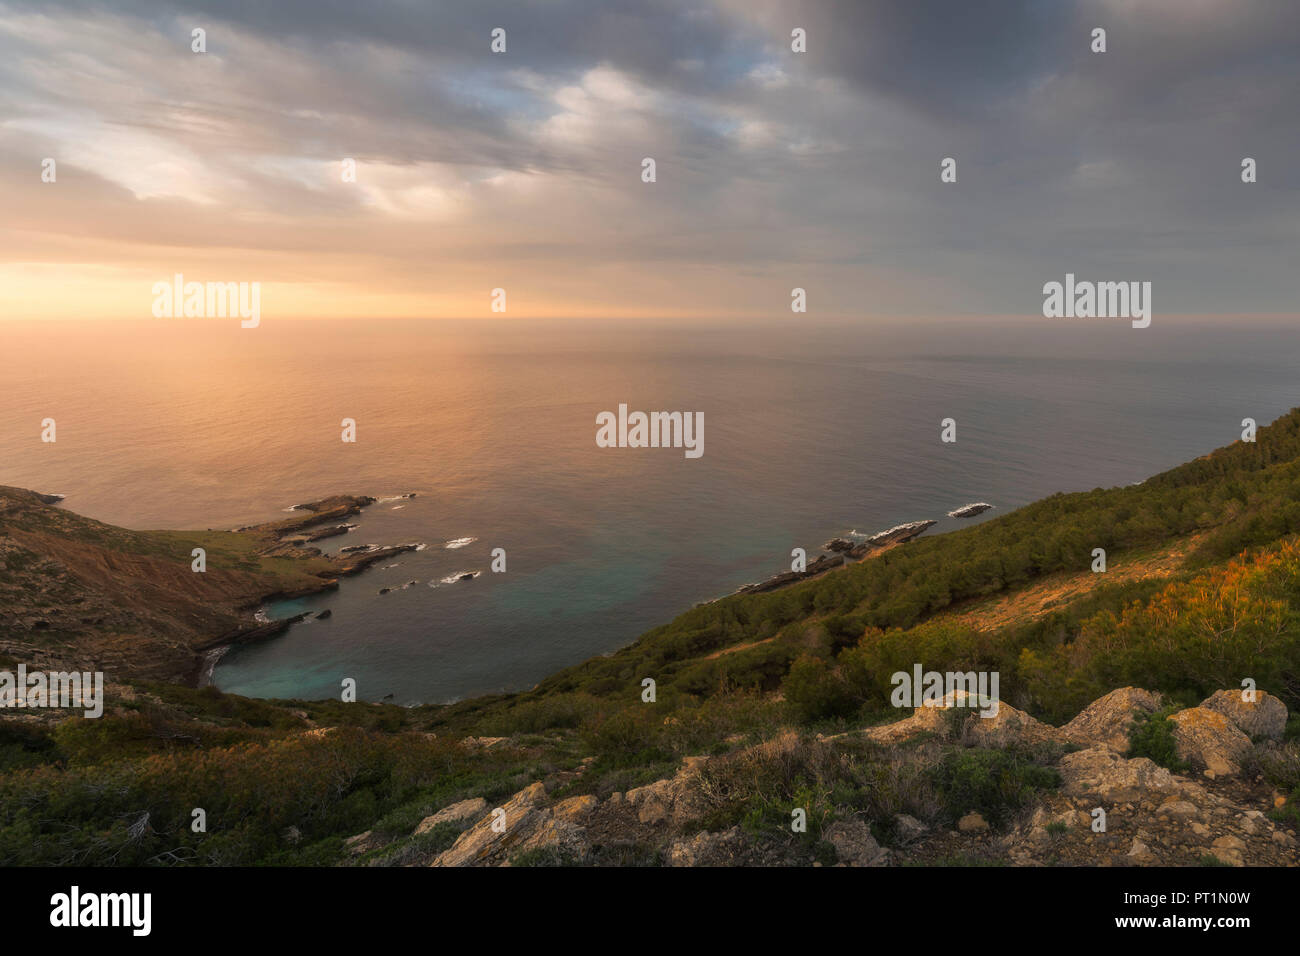 Sunrise on Punta Cortigliolo, Marettimo, Egadi Island, Trapani, Sicily, Italy, Europe Stock Photo